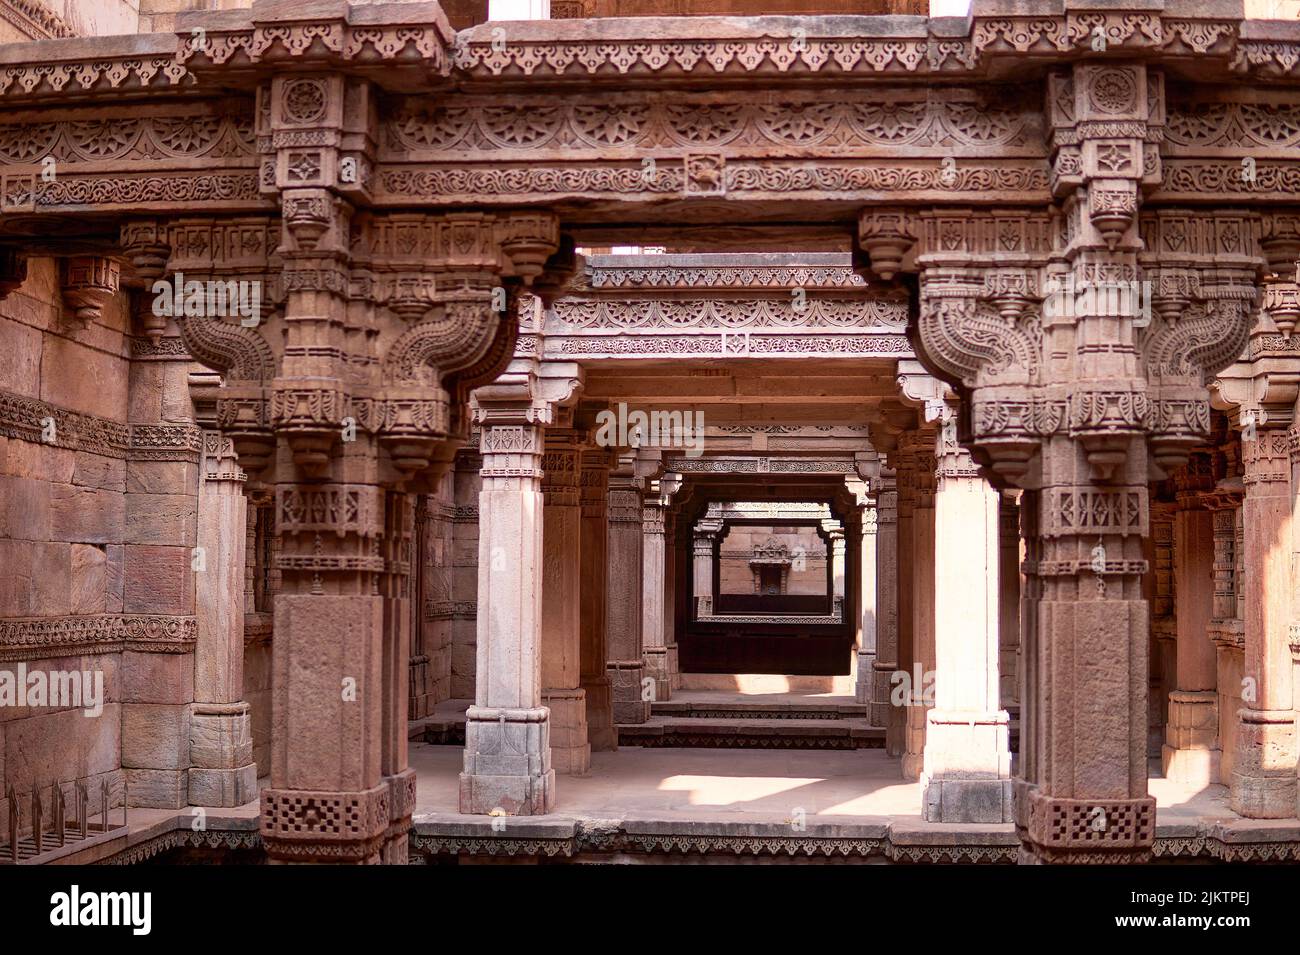 Das schöne Beispiel der indischen Architekturarbeit. Adalaj Stepwell oder Rudabai Stepwell. Adalaj, Indien. Stockfoto